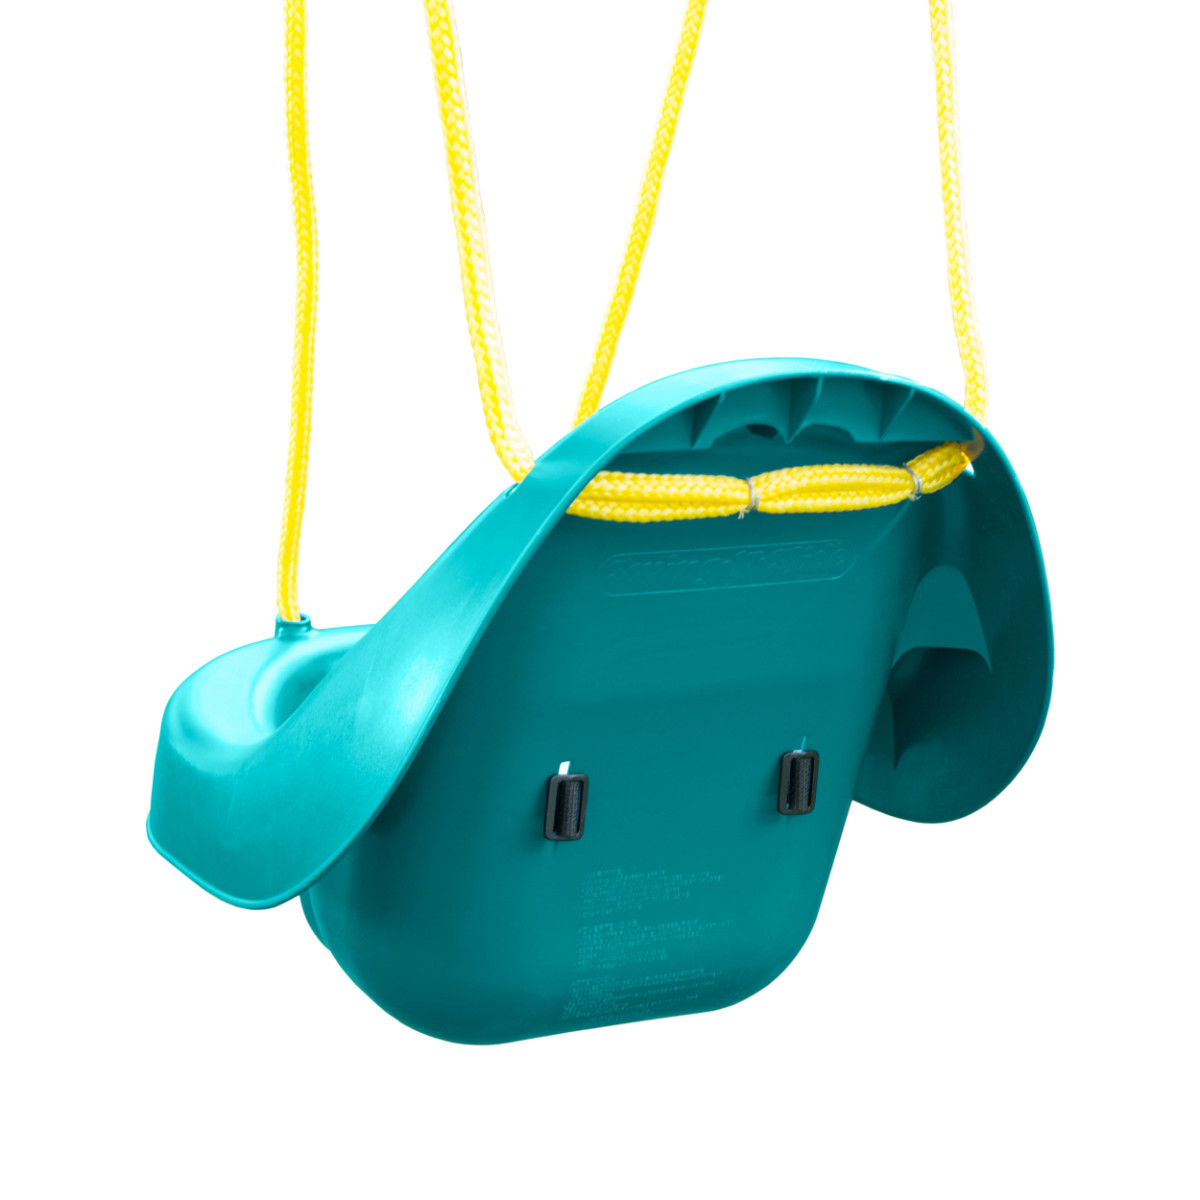 Toddler Swing with Rope (NE-5027-1PK)